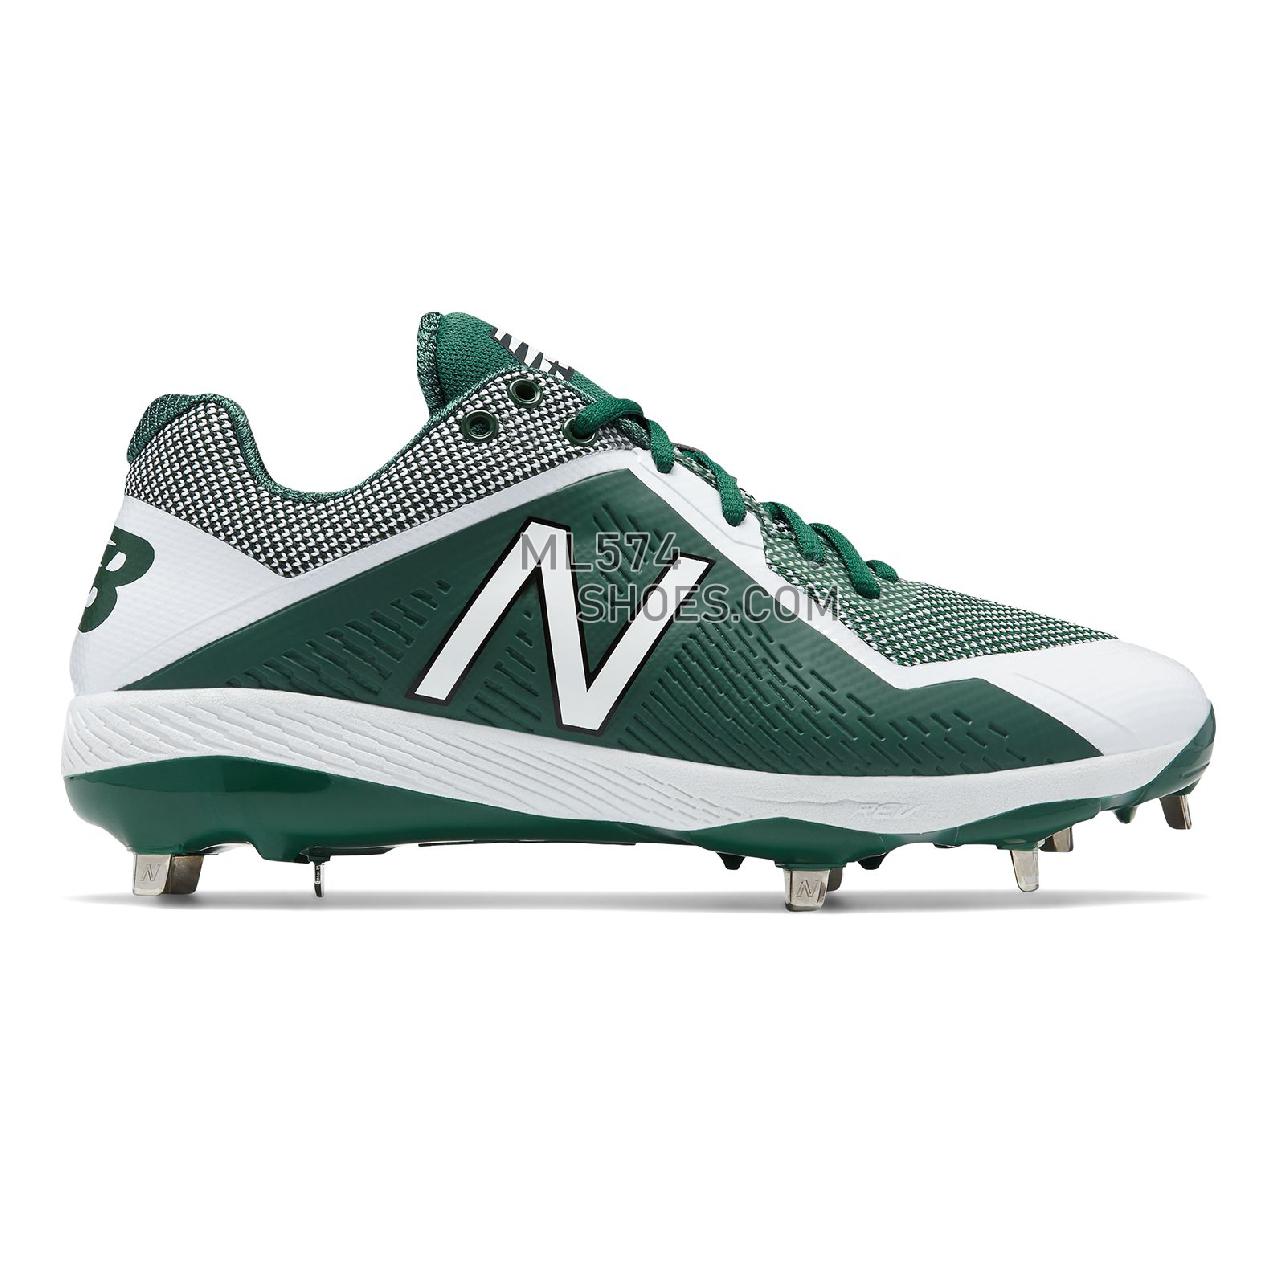 New Balance 4040v4 - Men's 4040 - Baseball Green with White - L4040TG4